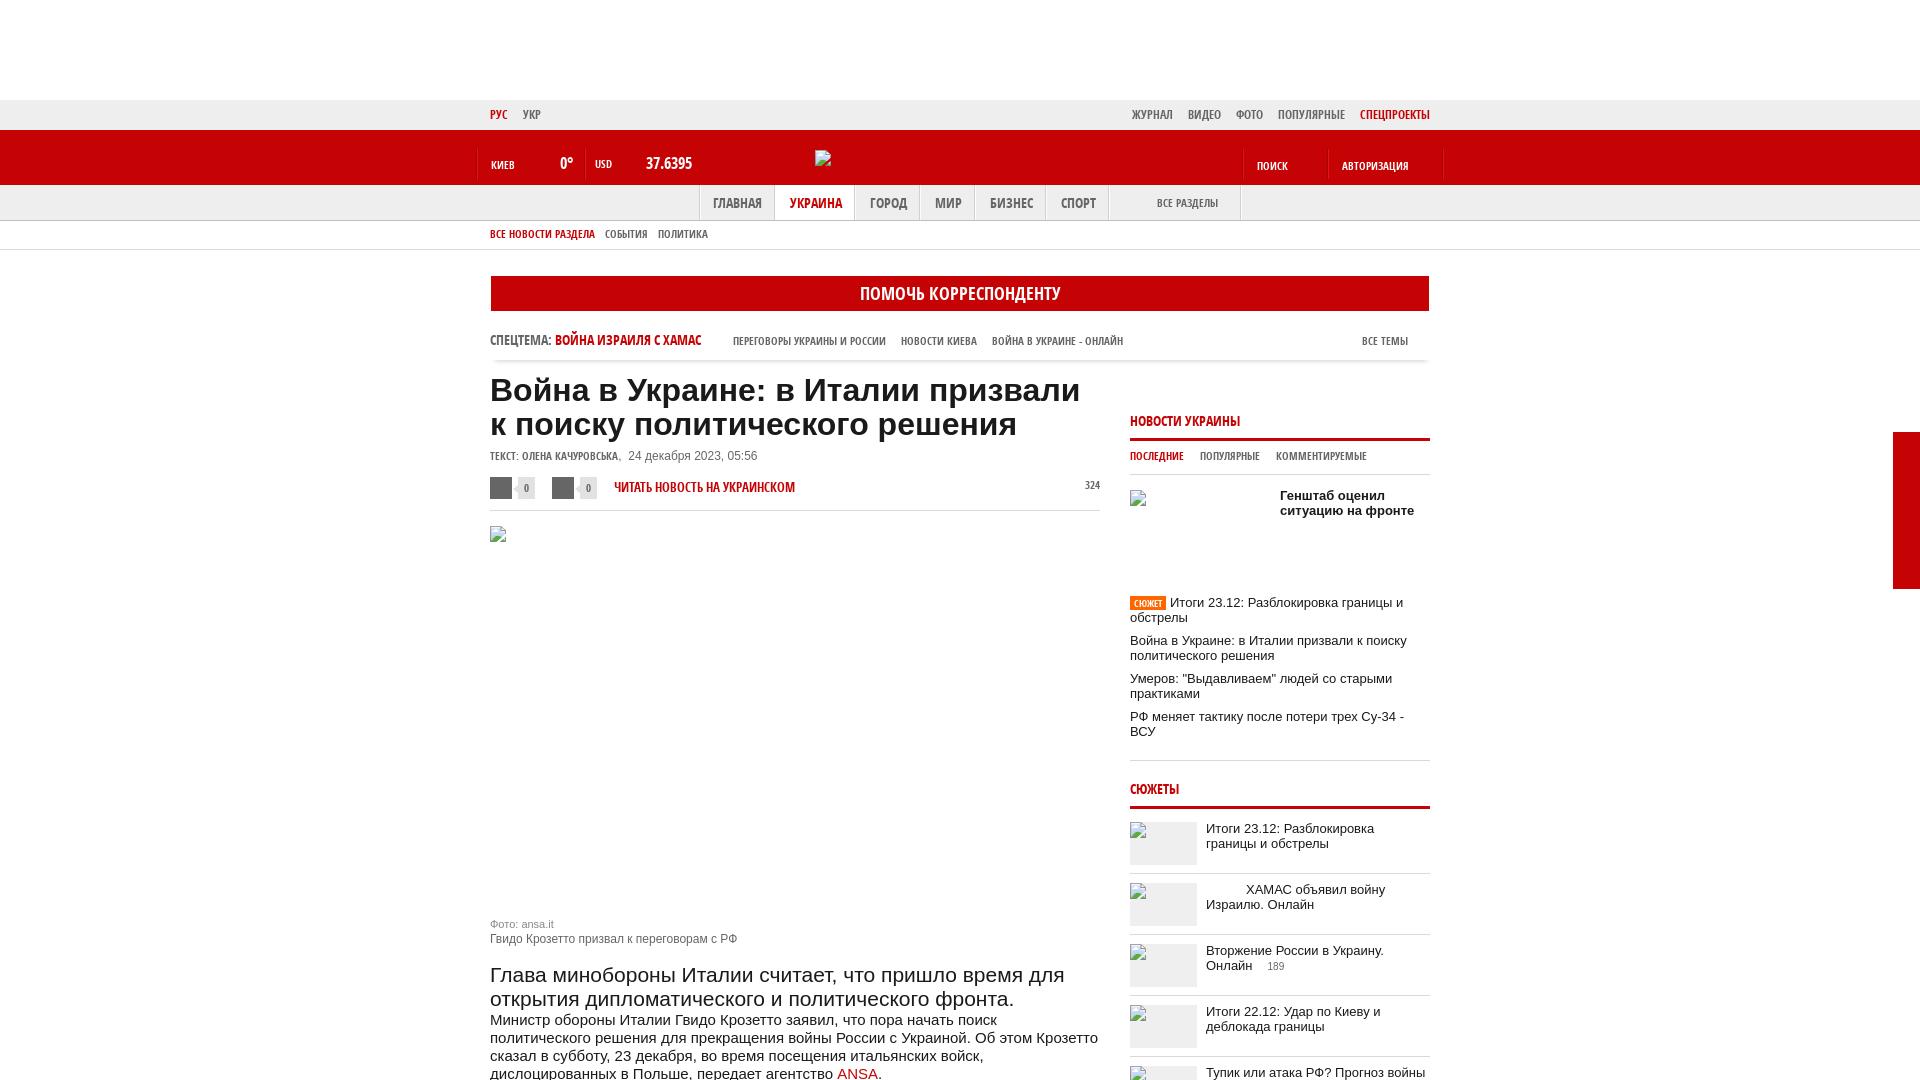 Guerra in Ucraina: l'Italia chiede una soluzione politica |  Bot di notizie